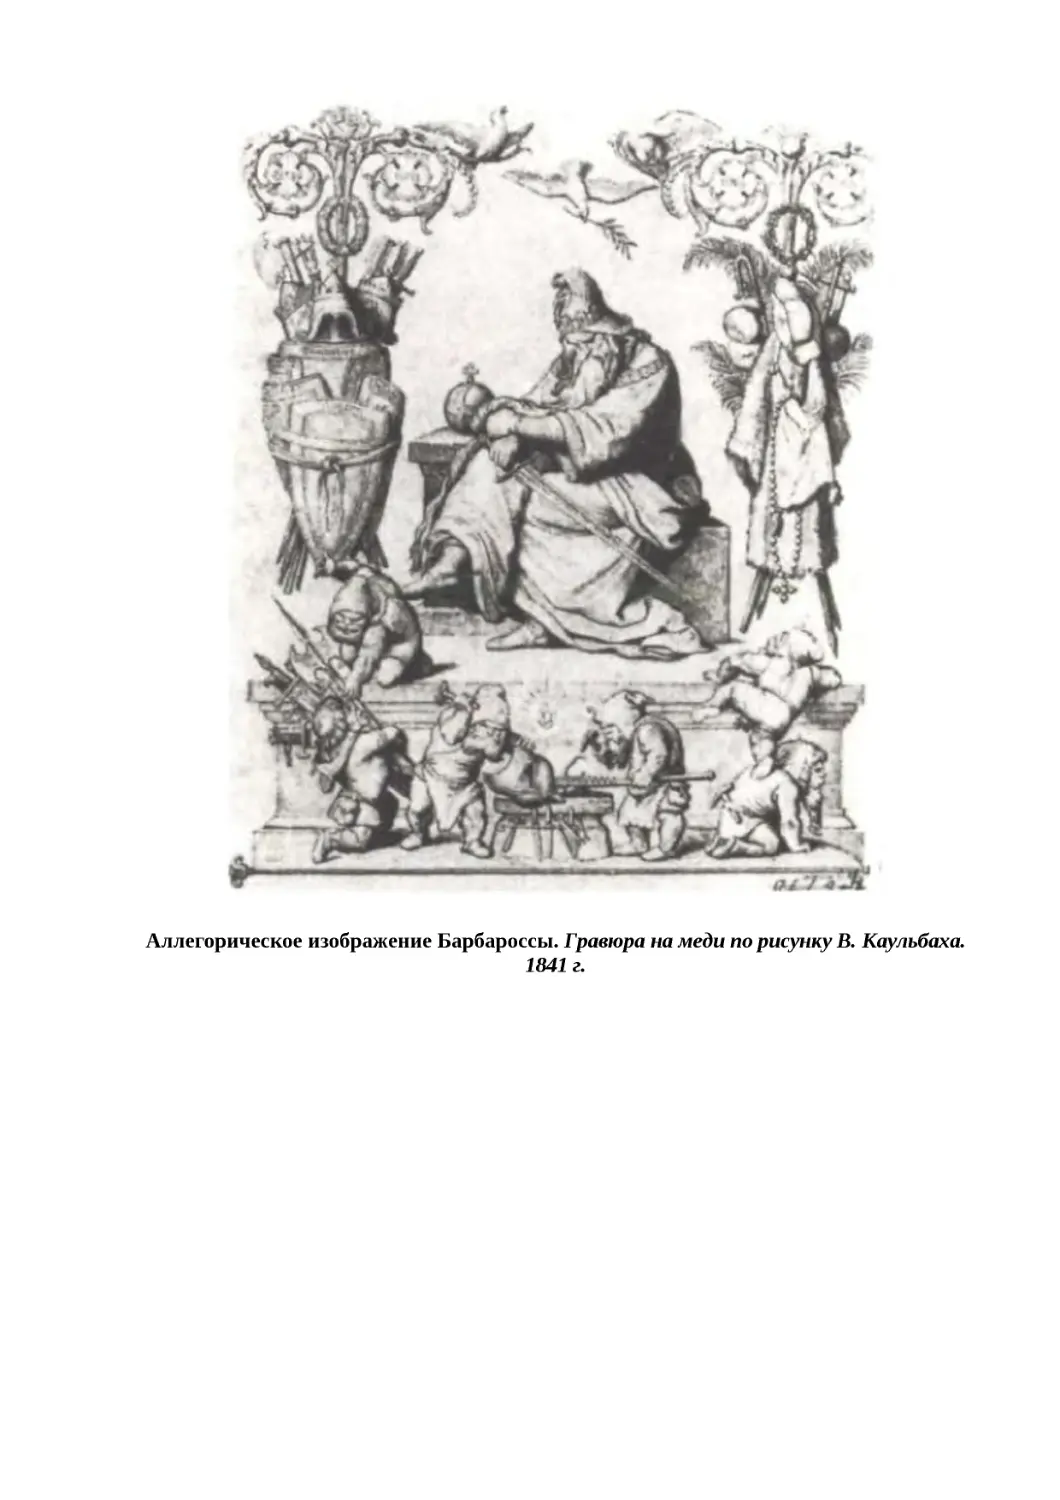 "
﻿Аллегорическое изображение Барбароссы. Гравюра на меди по рисунку В. Каульбаха. 1841 г